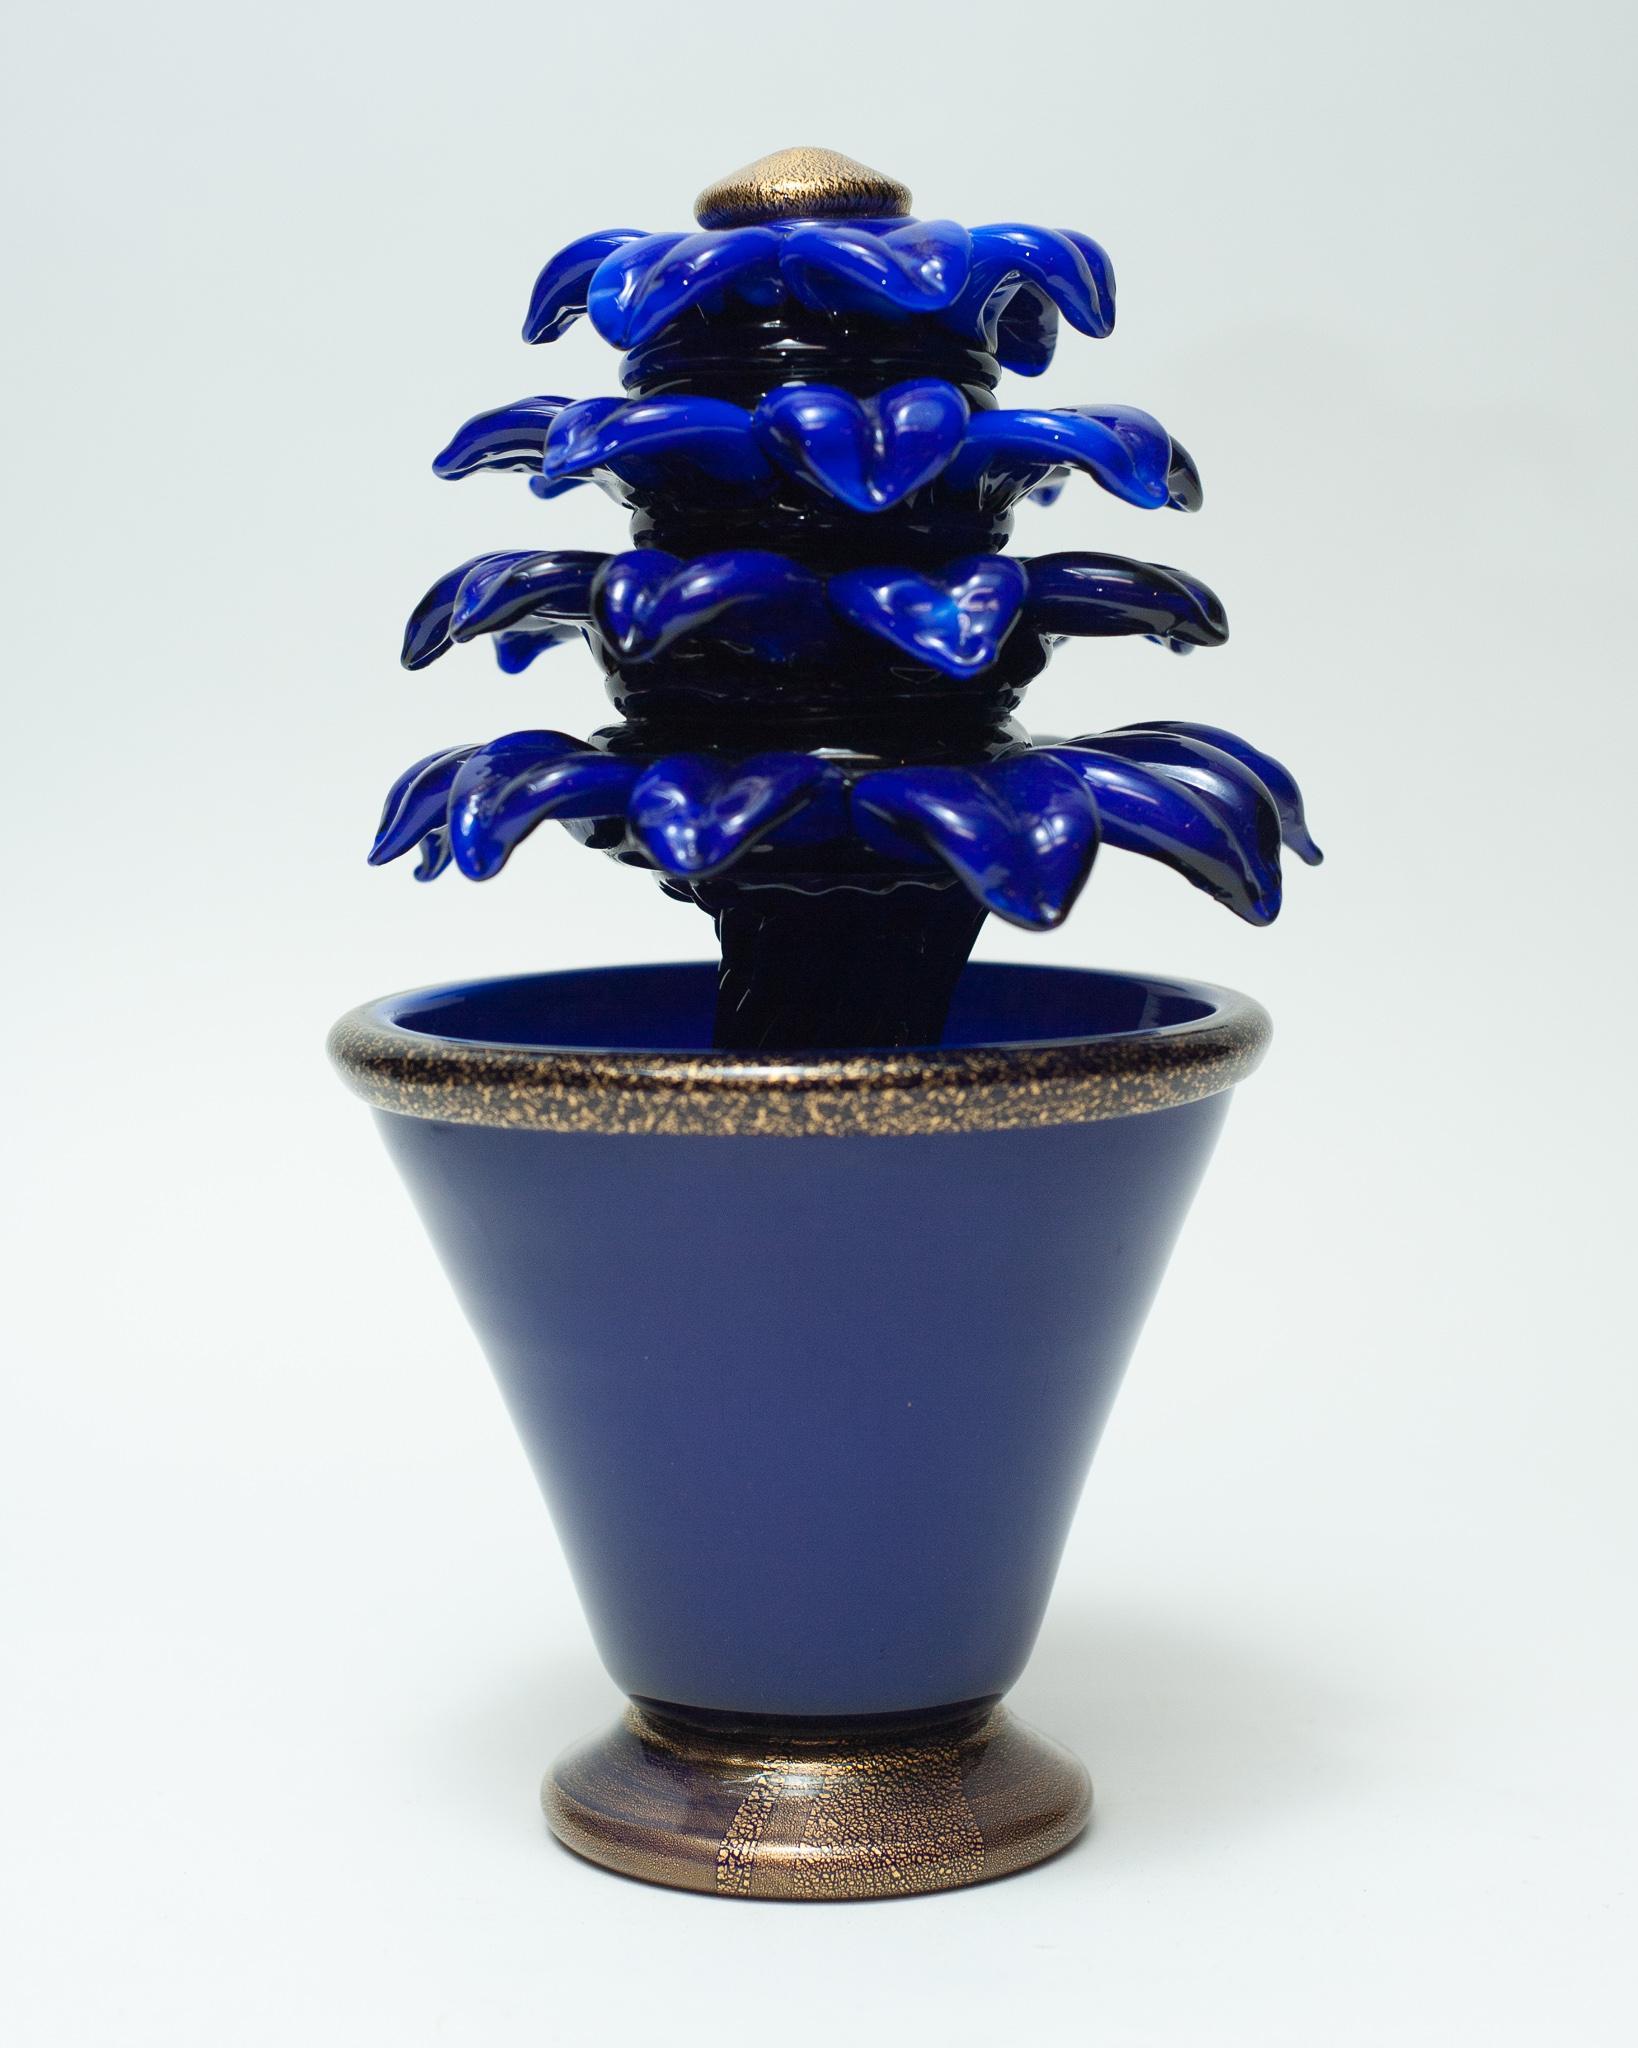 Une étonnante sculpture de fleur en verre de Murano bleu électrique, avec des feuilles d'or incorporées dans le verre et un riche ton bleu. Magnifiquement fabriqué à la main en Italie.